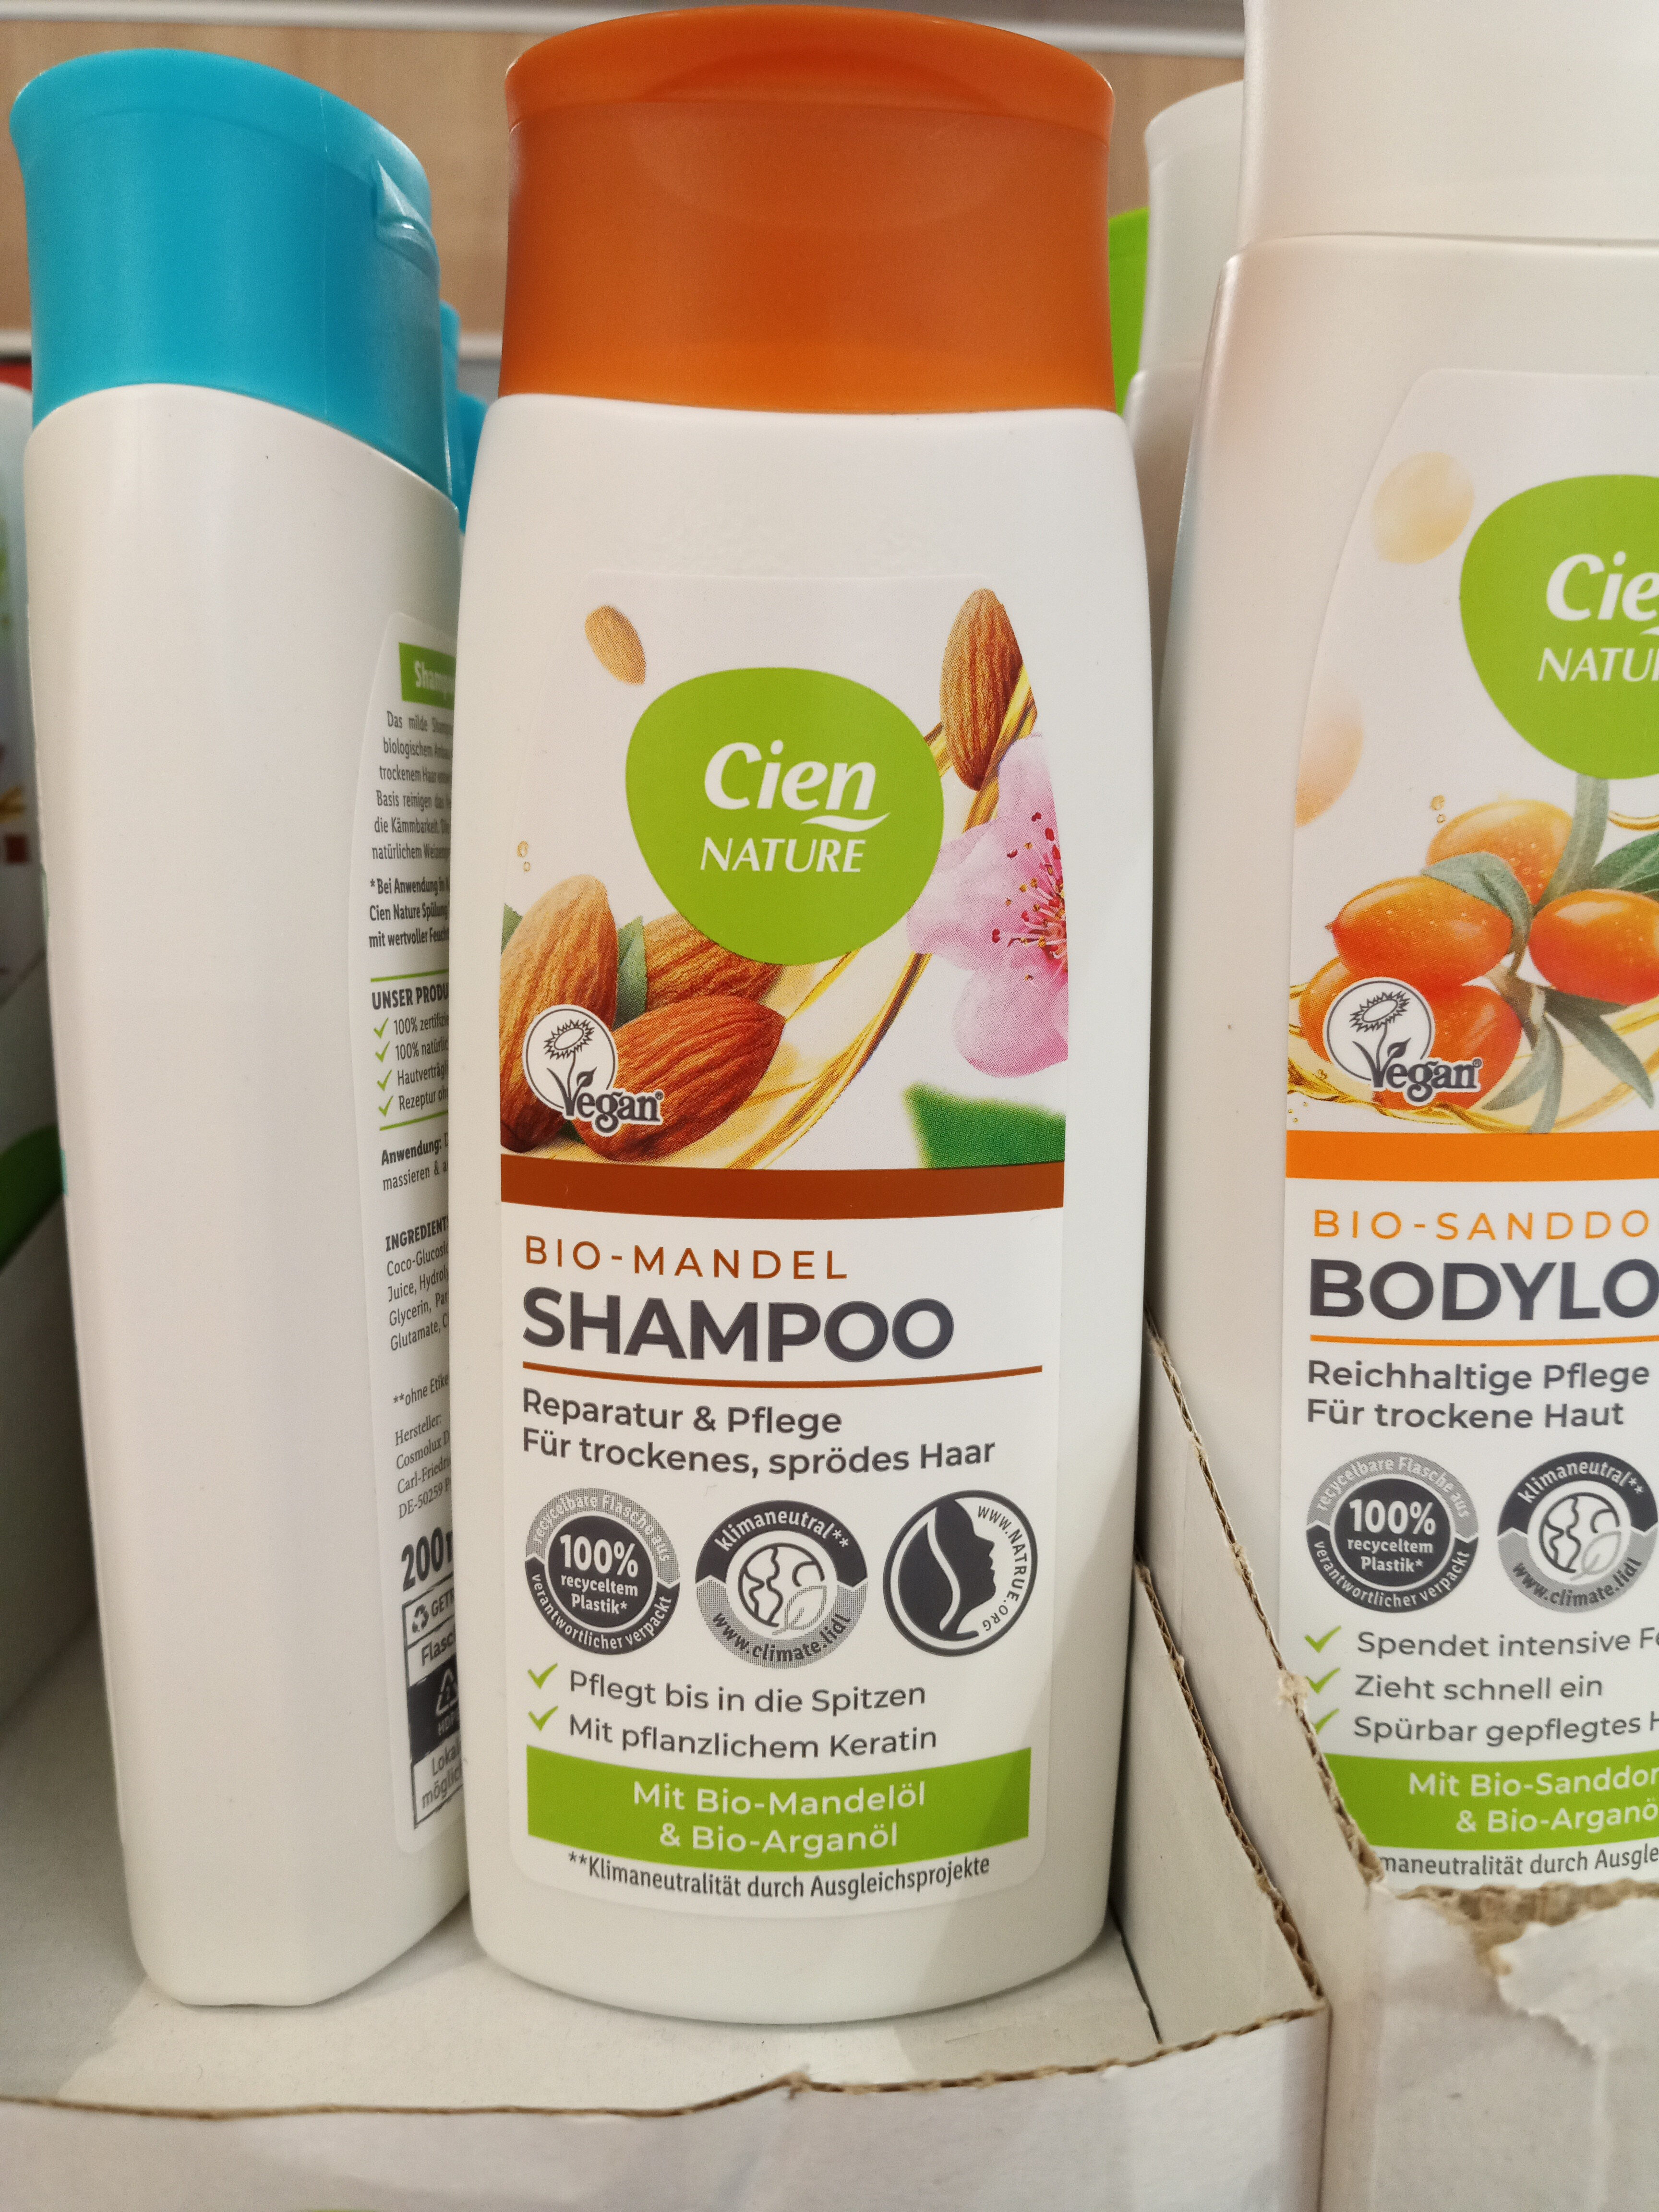 Cien Nature Bio Mandel Shampoo - Product - de